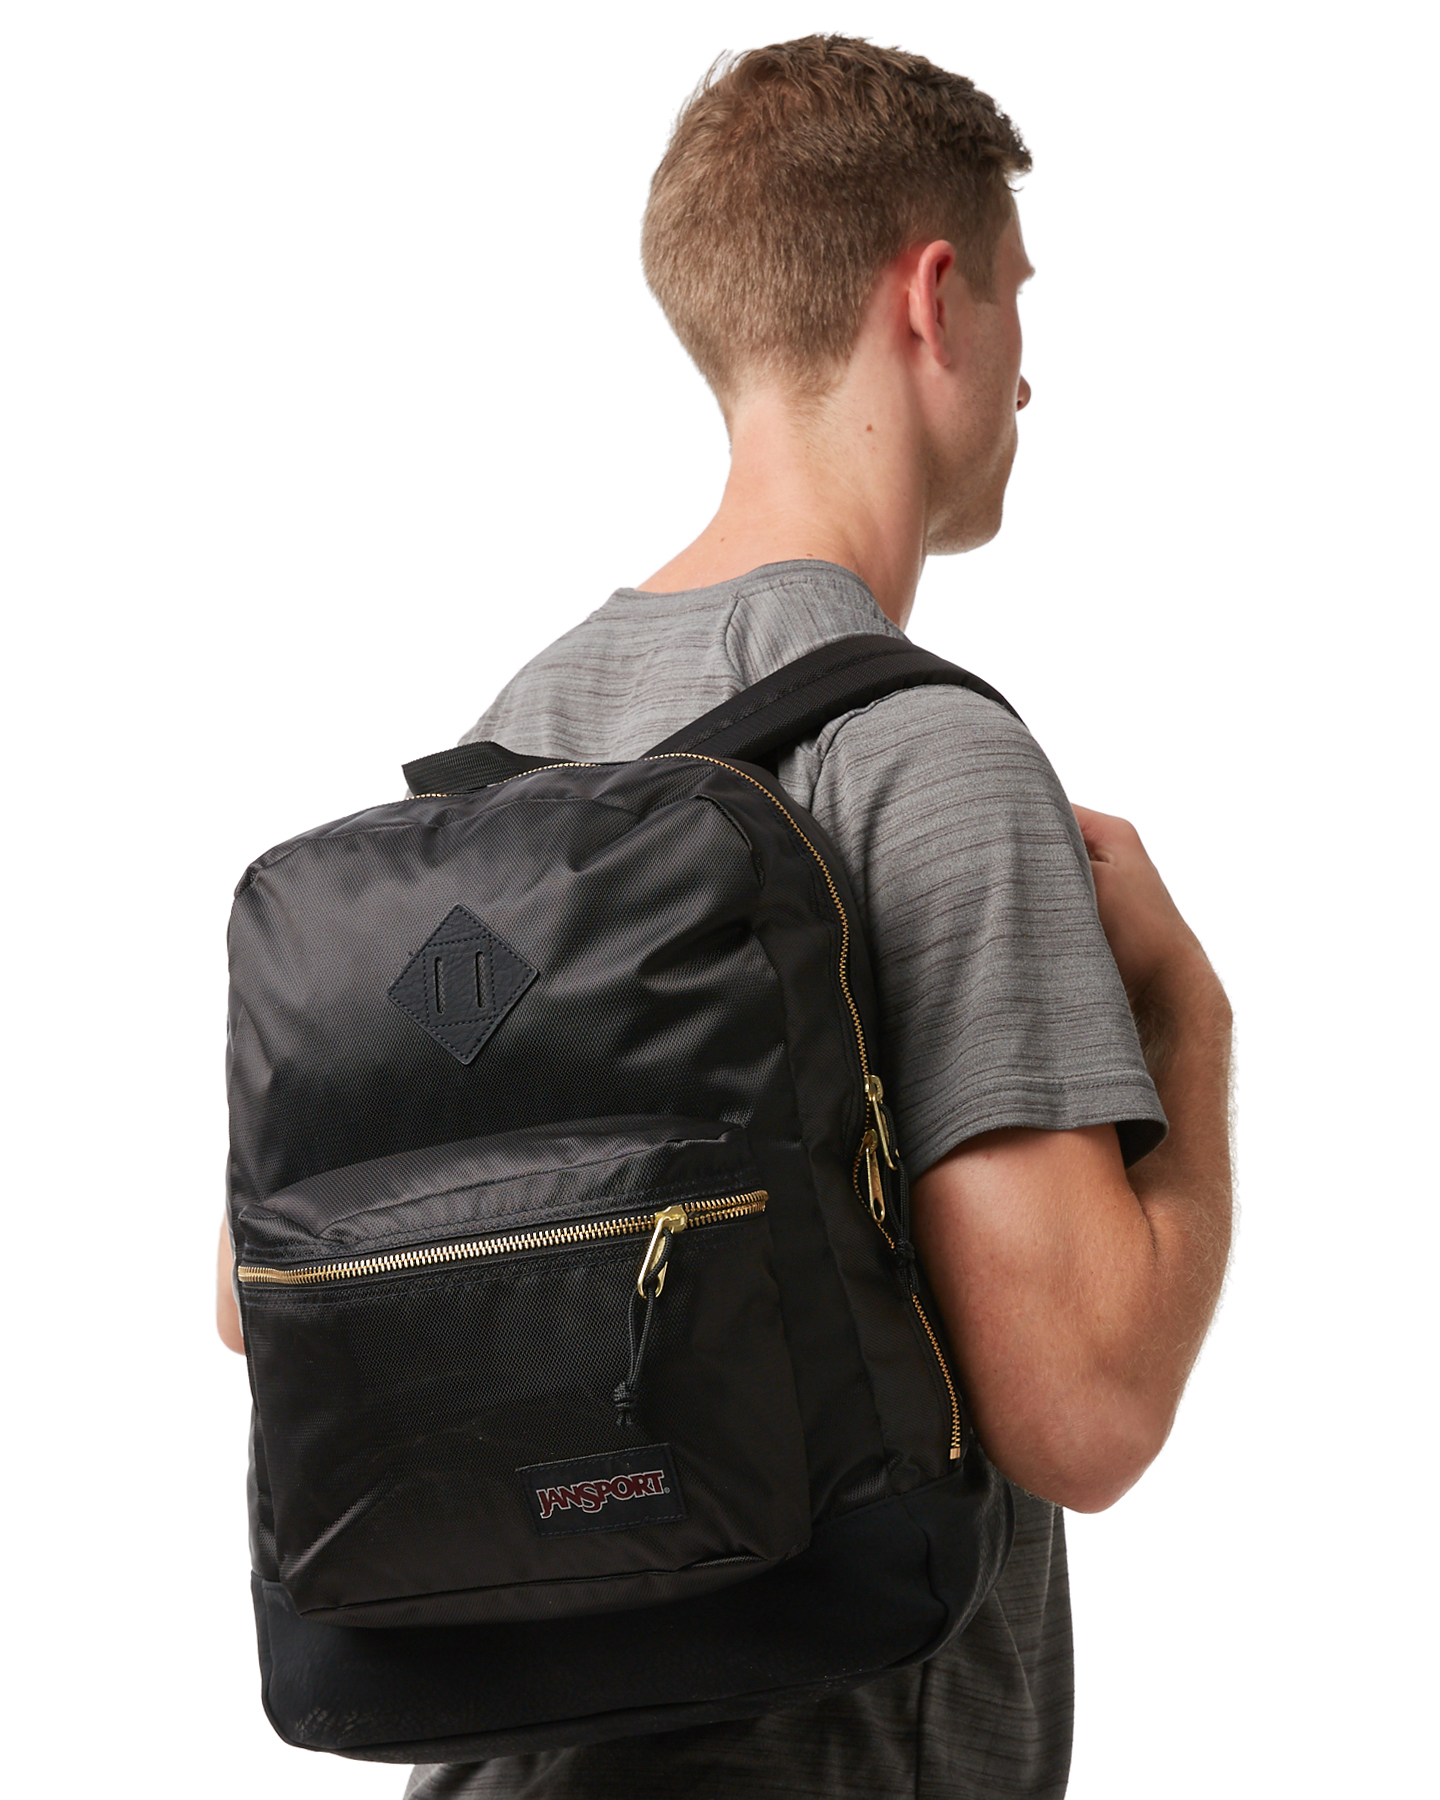 black and gold jansport backpack